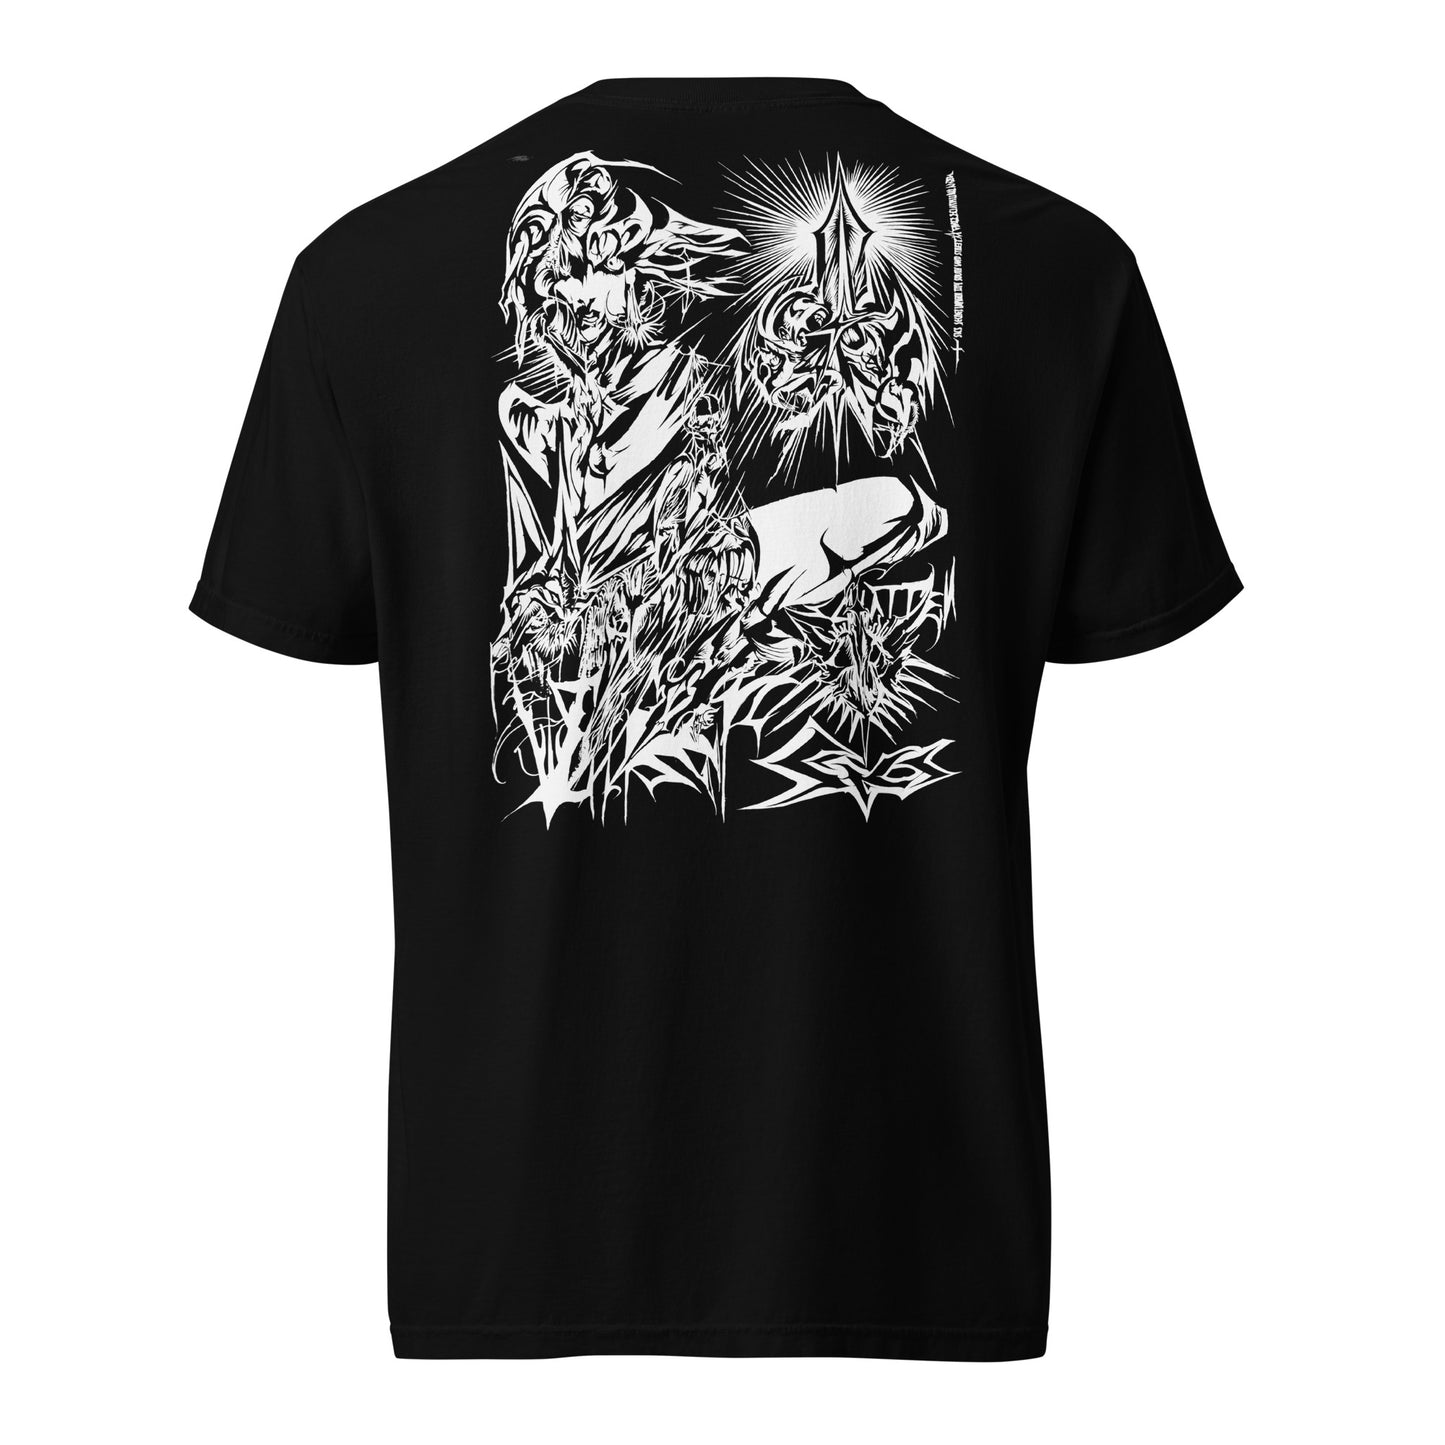 SICS - Ghost - baobabwod artwear - Special Edition - T-Shirt